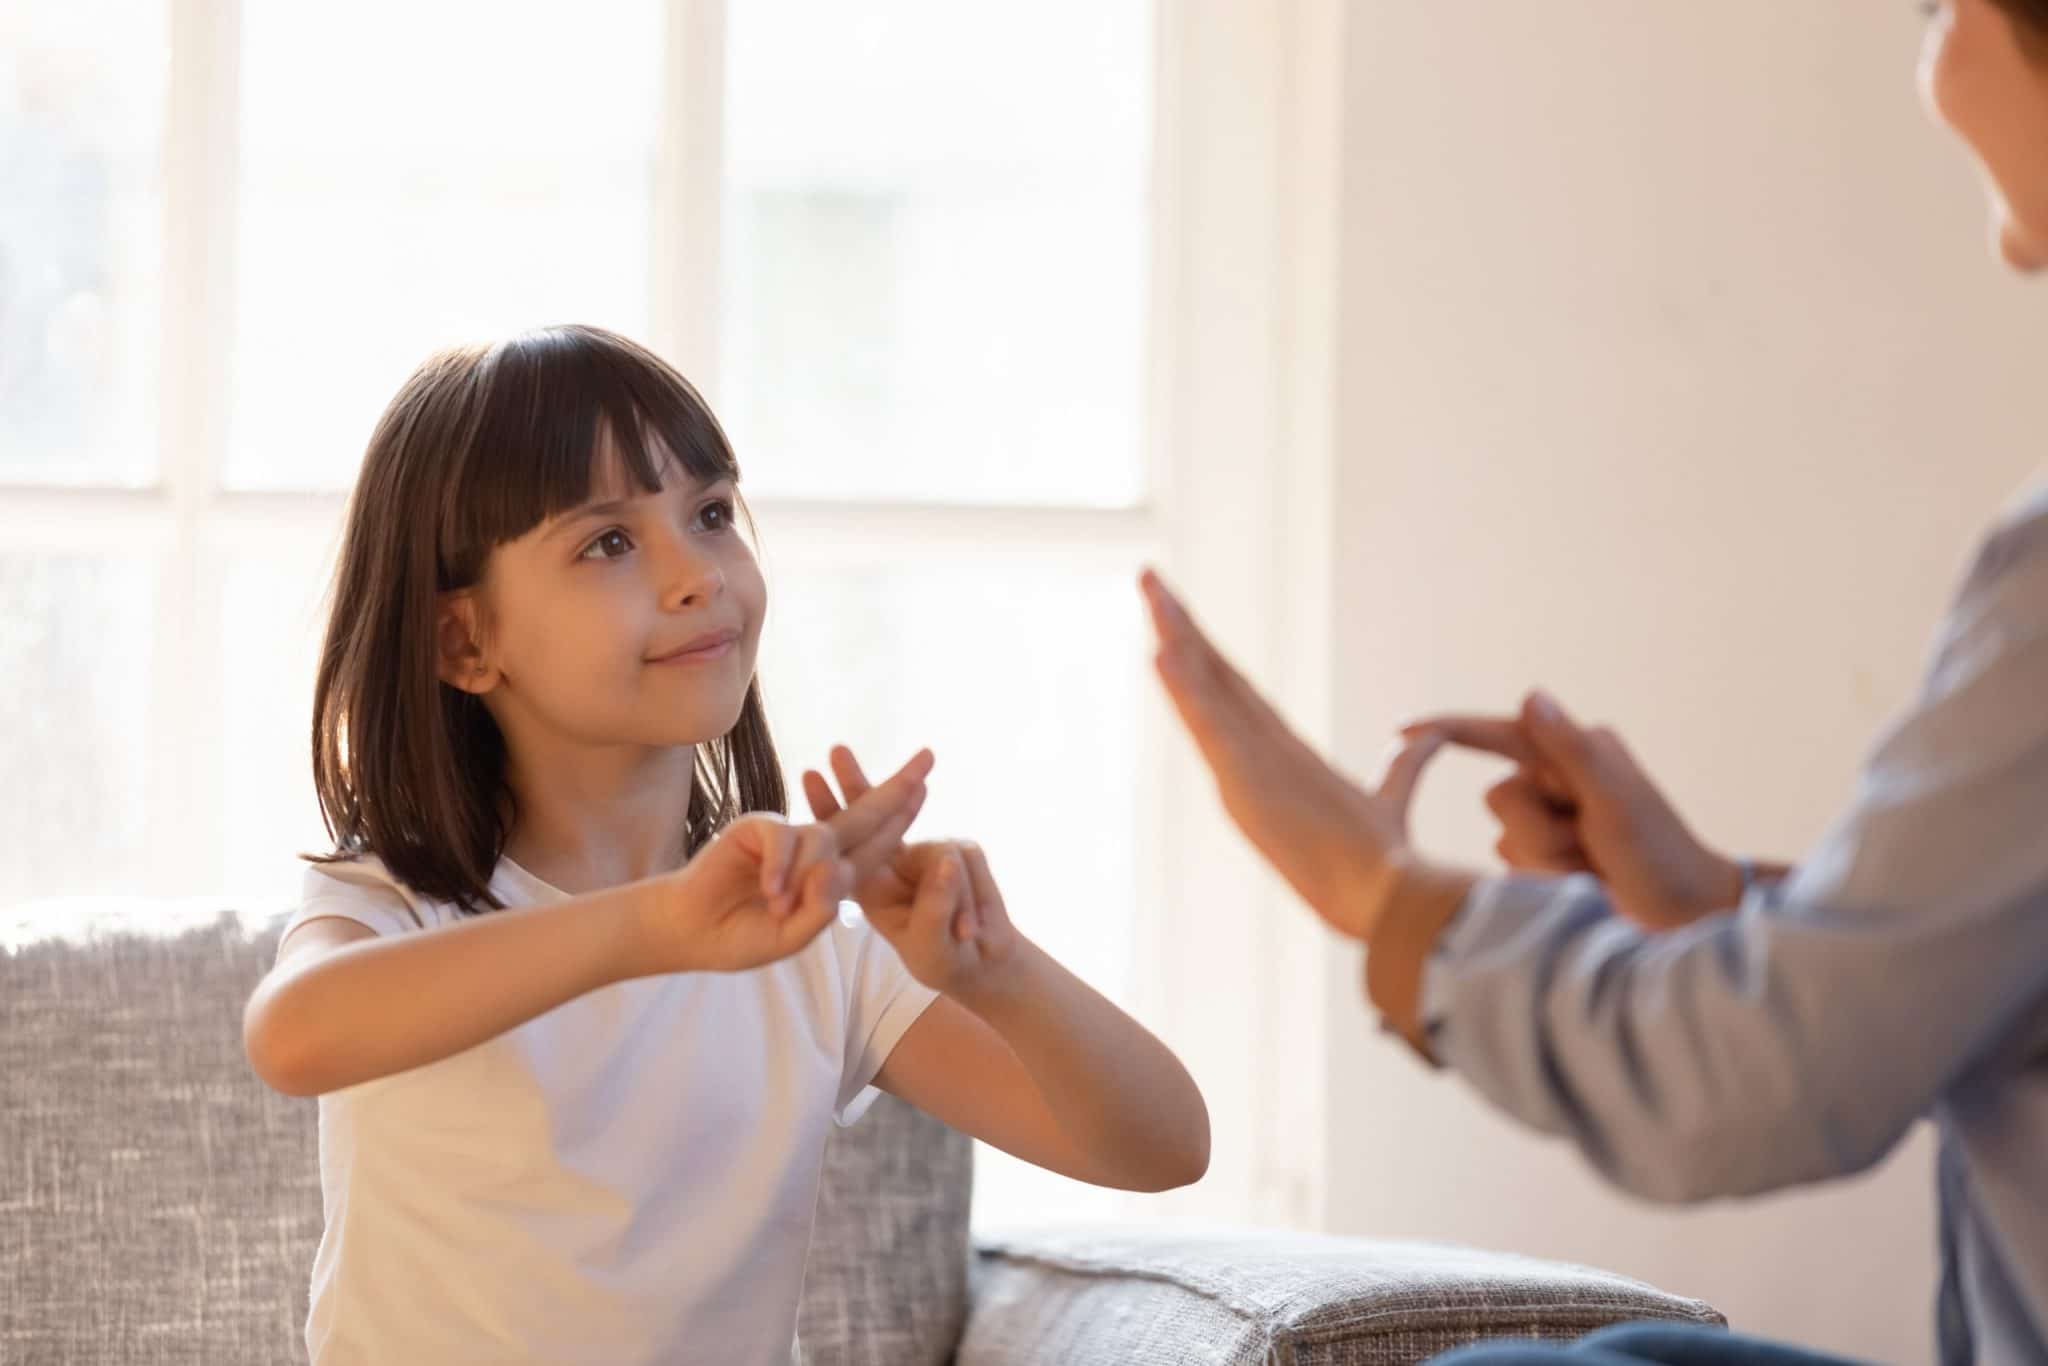 Apprendre les gestes aux enfants pour leur permettre de communiquer